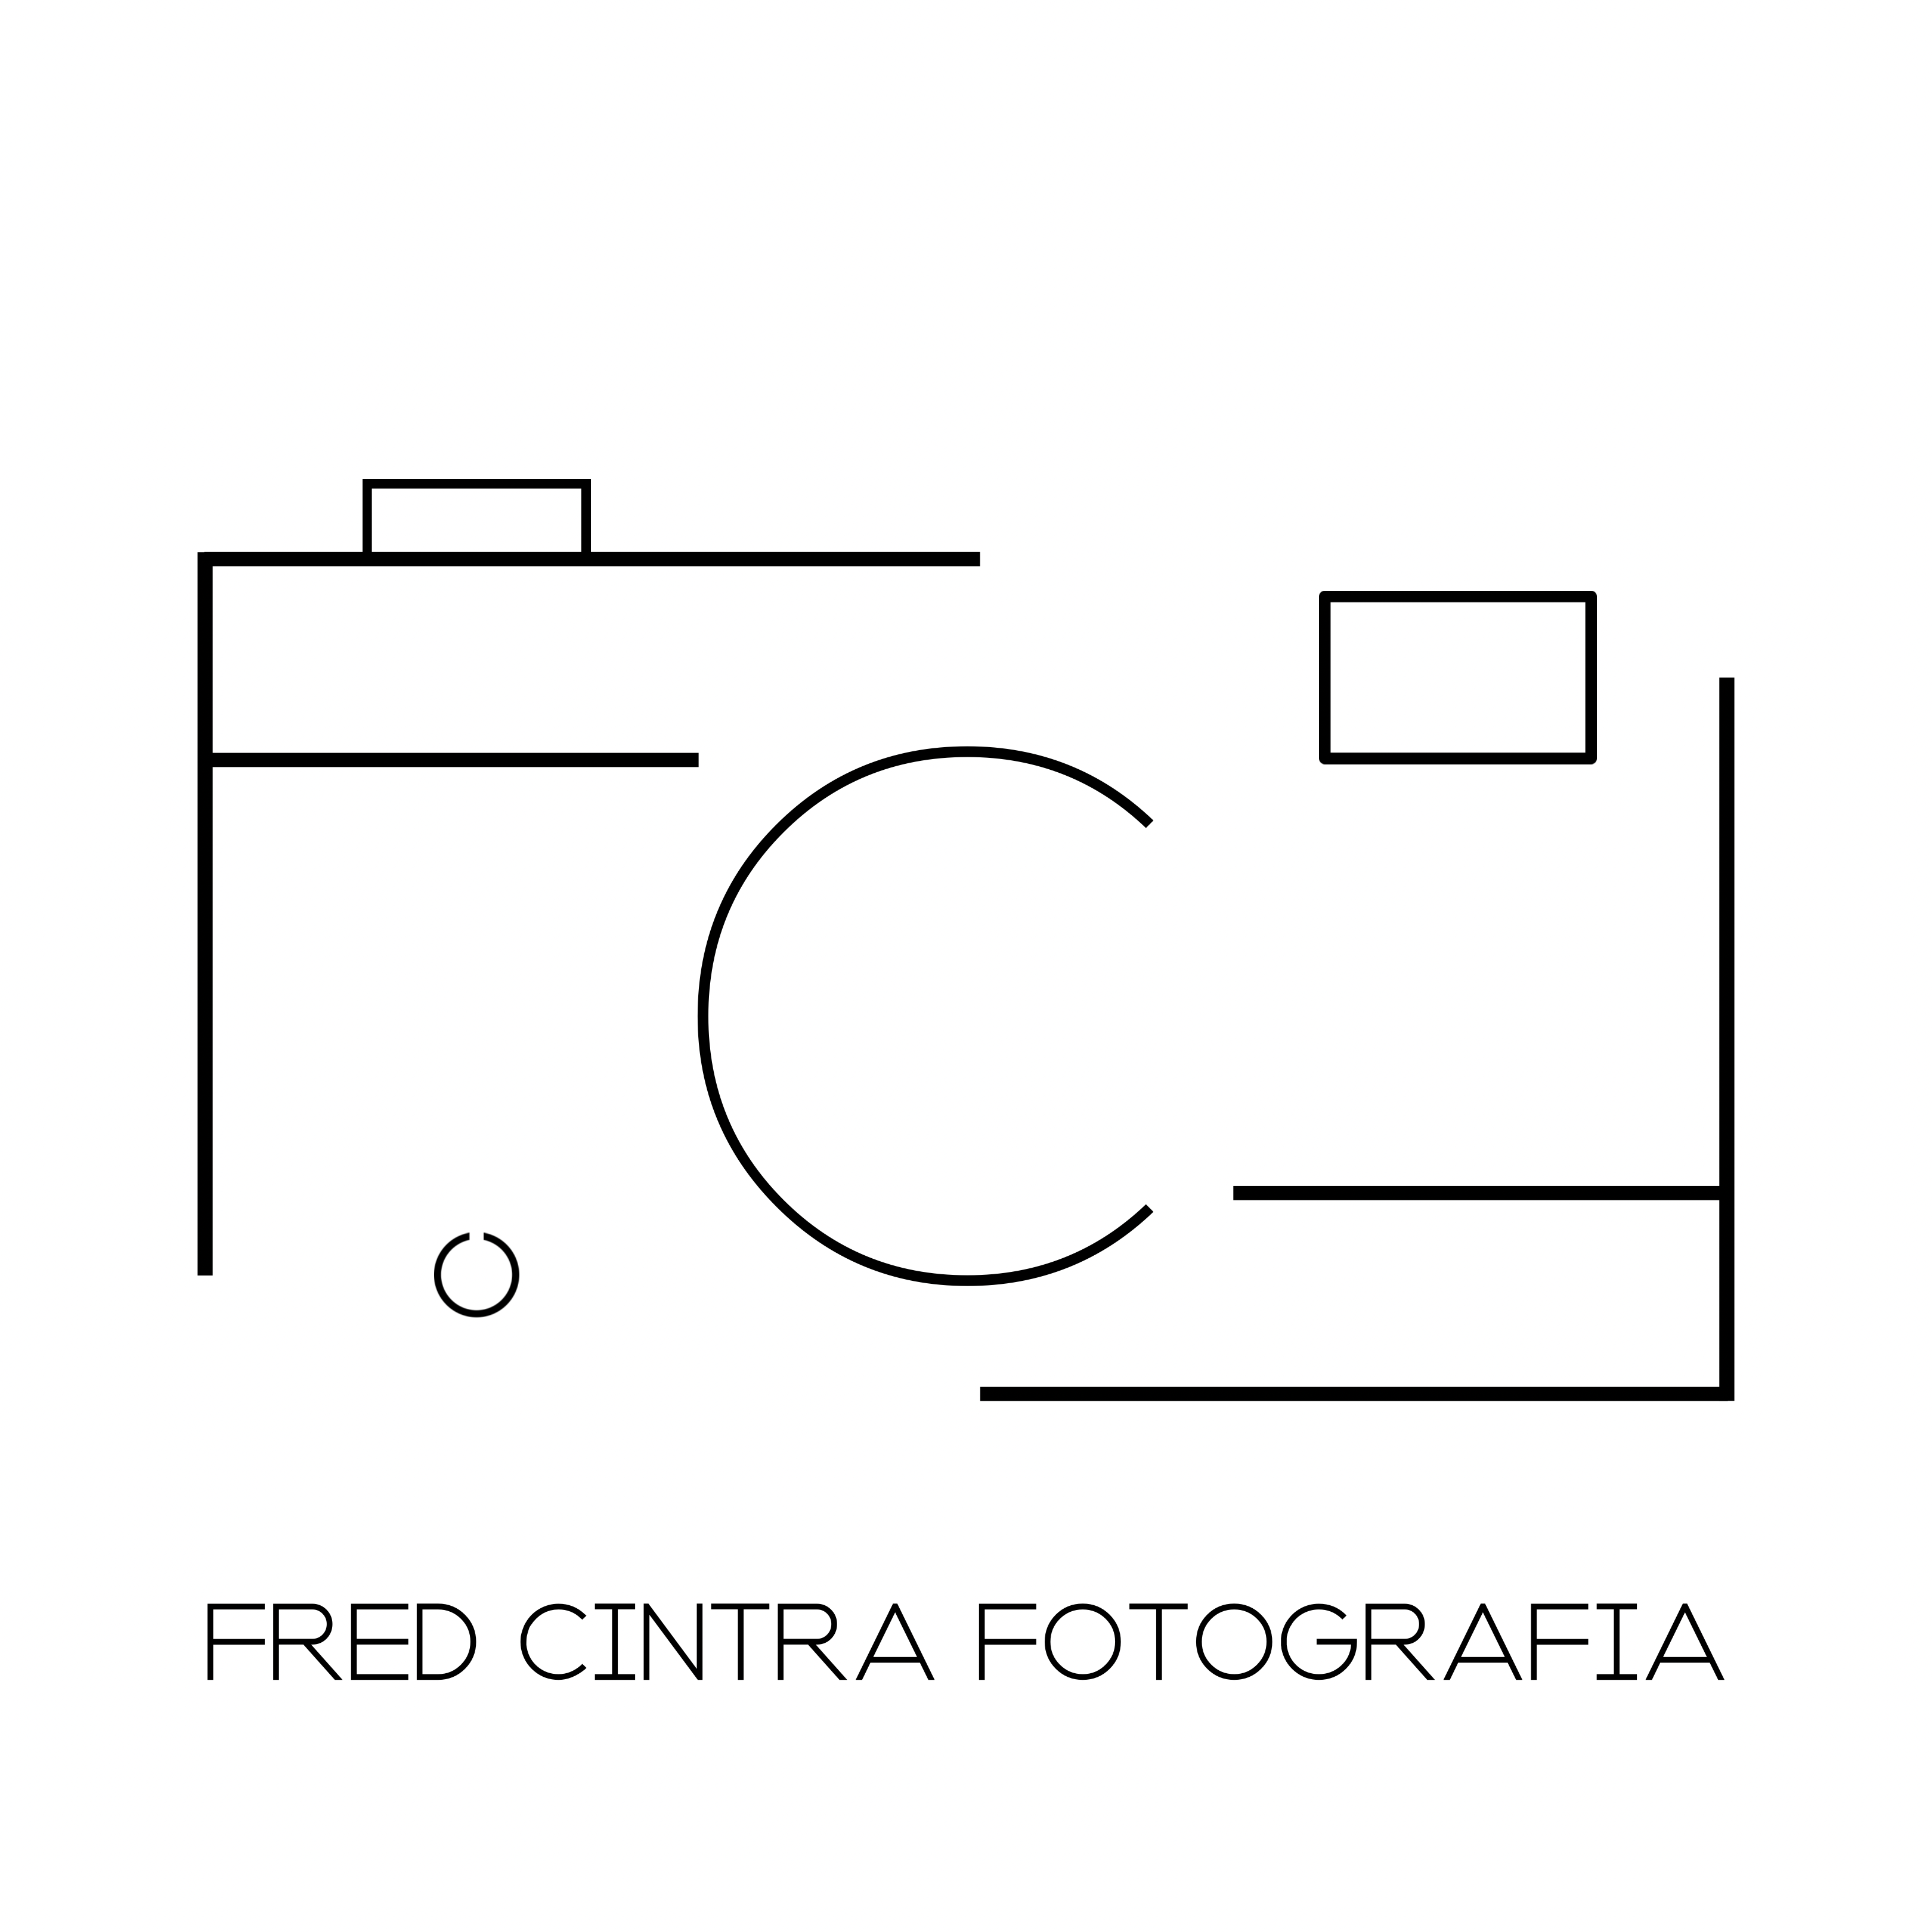 Fred Cintra Fotografia